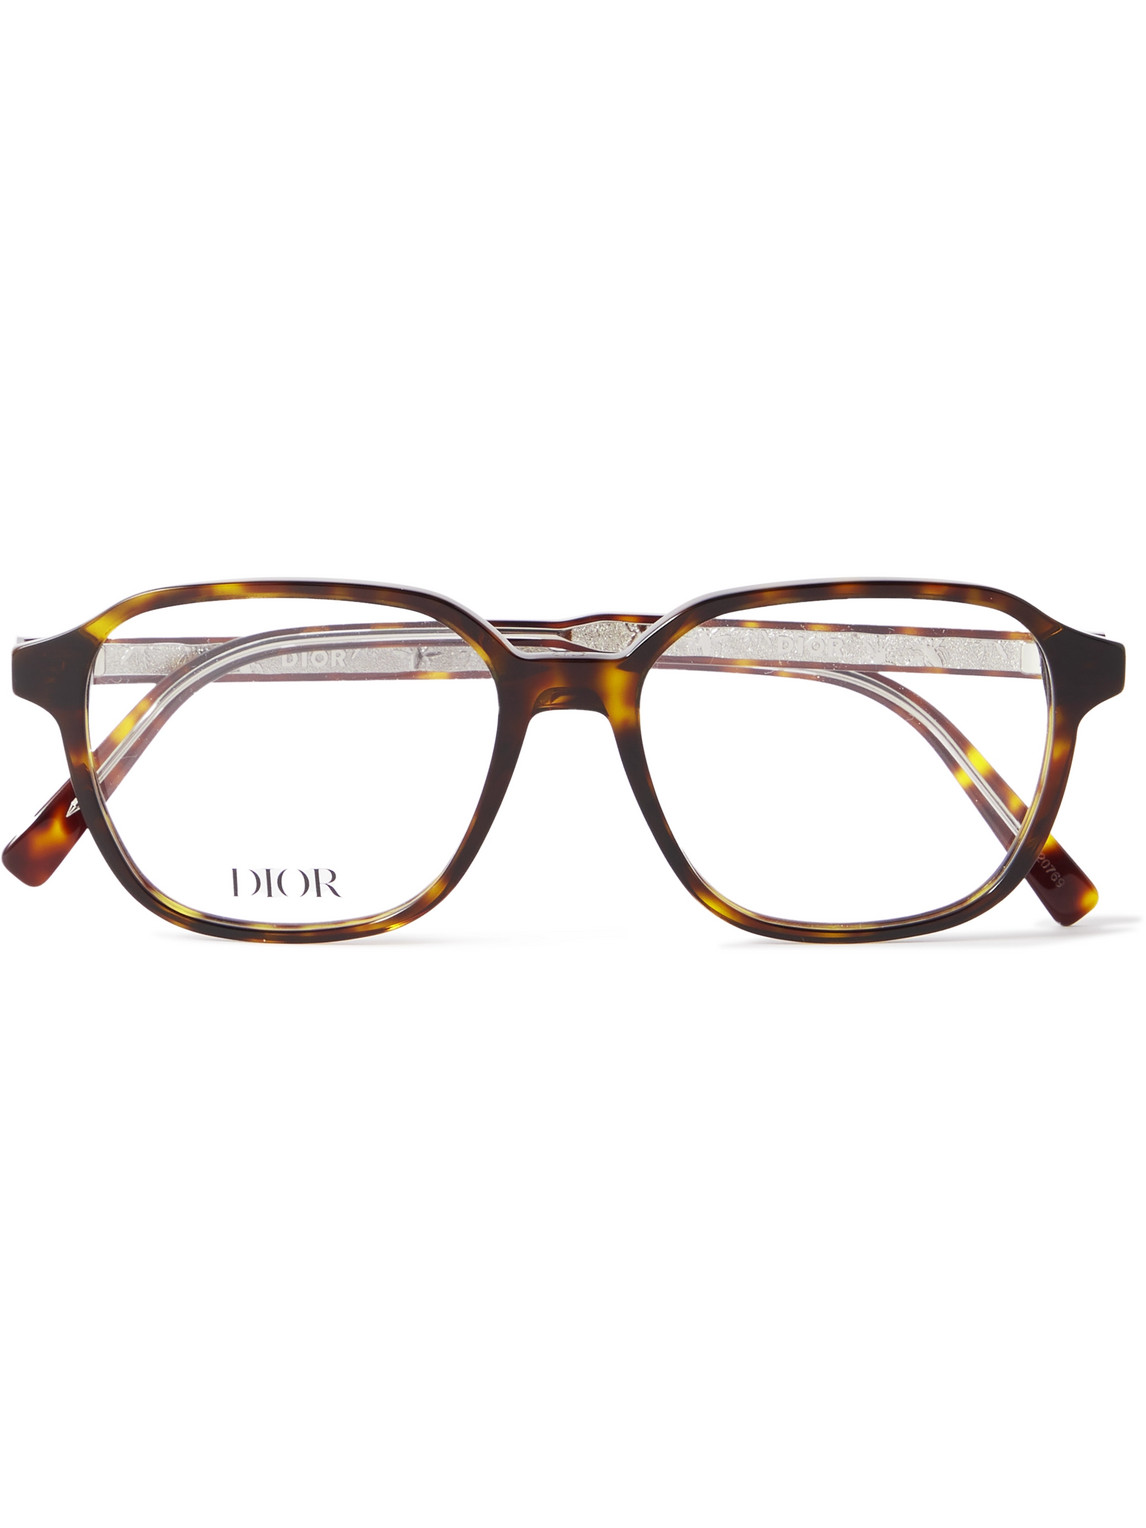 InDiorO S3I Square-Frame Tortoiseshell Acetate Optical Glasses